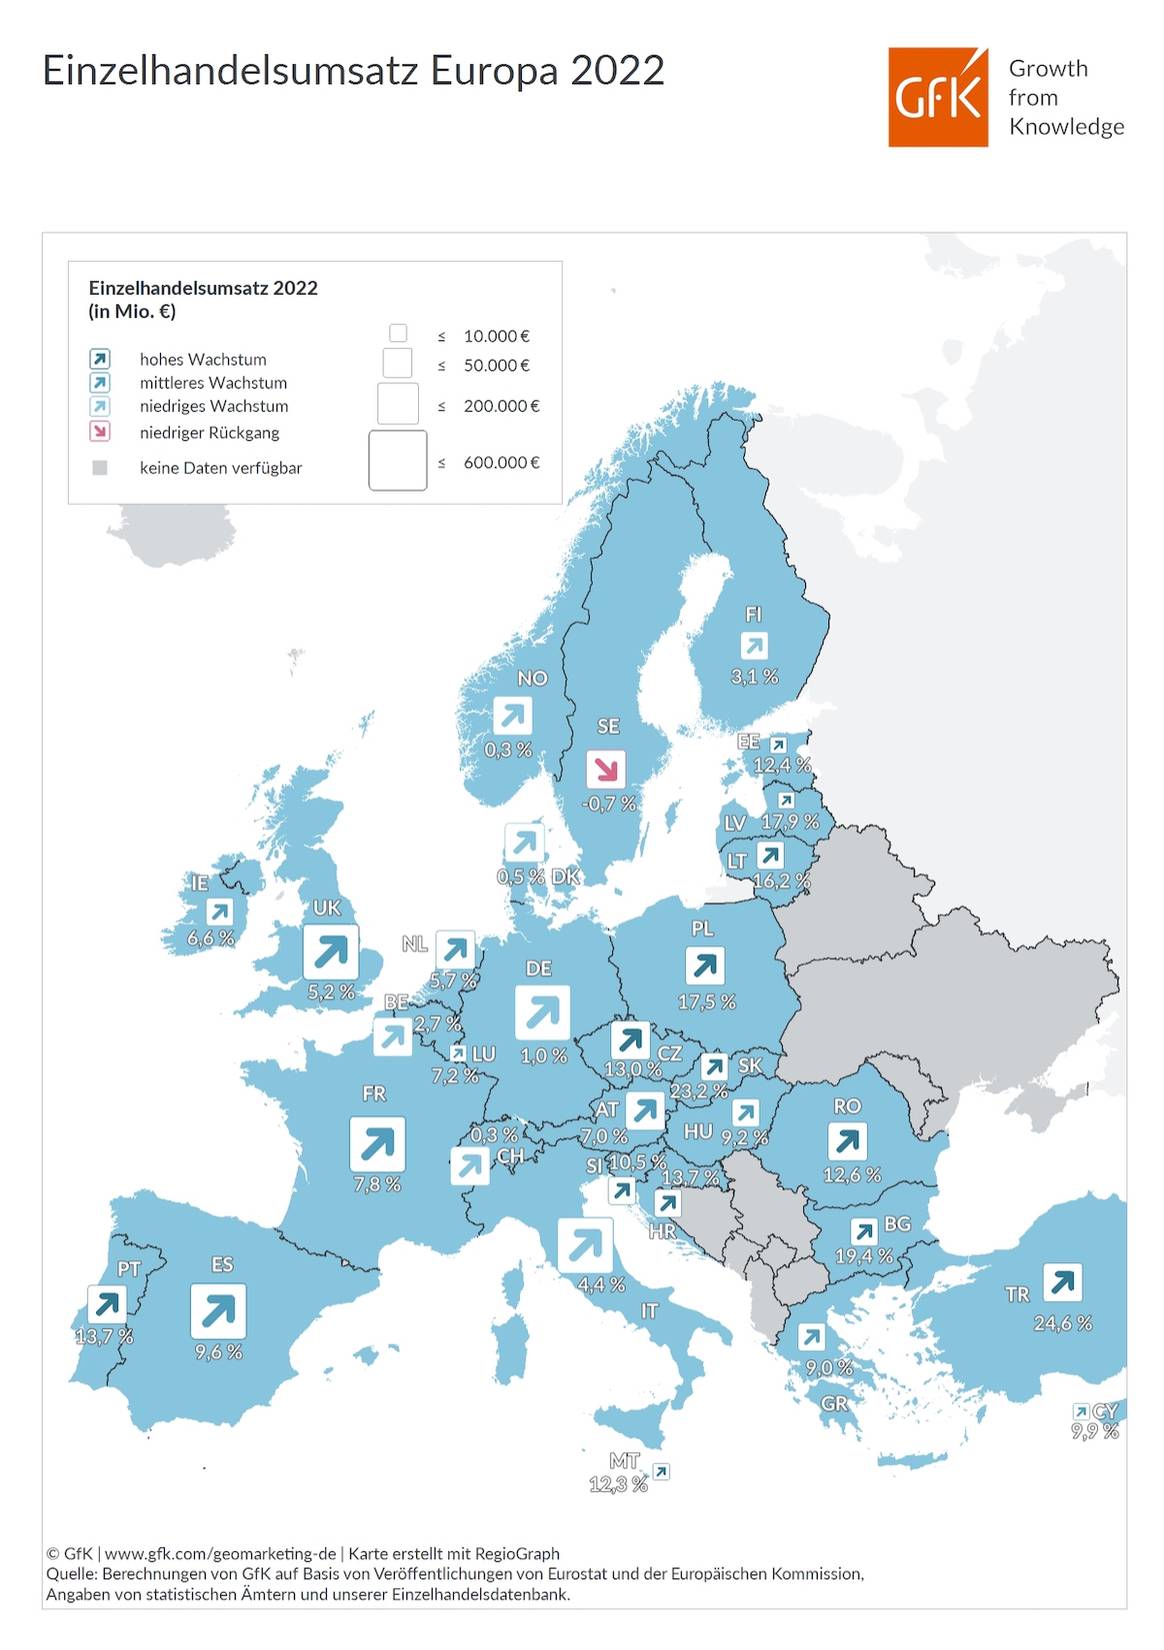 Entwicklung der Einzelhandelsumsätze in ausgewählten europäischen Ländern im Jahr 2022